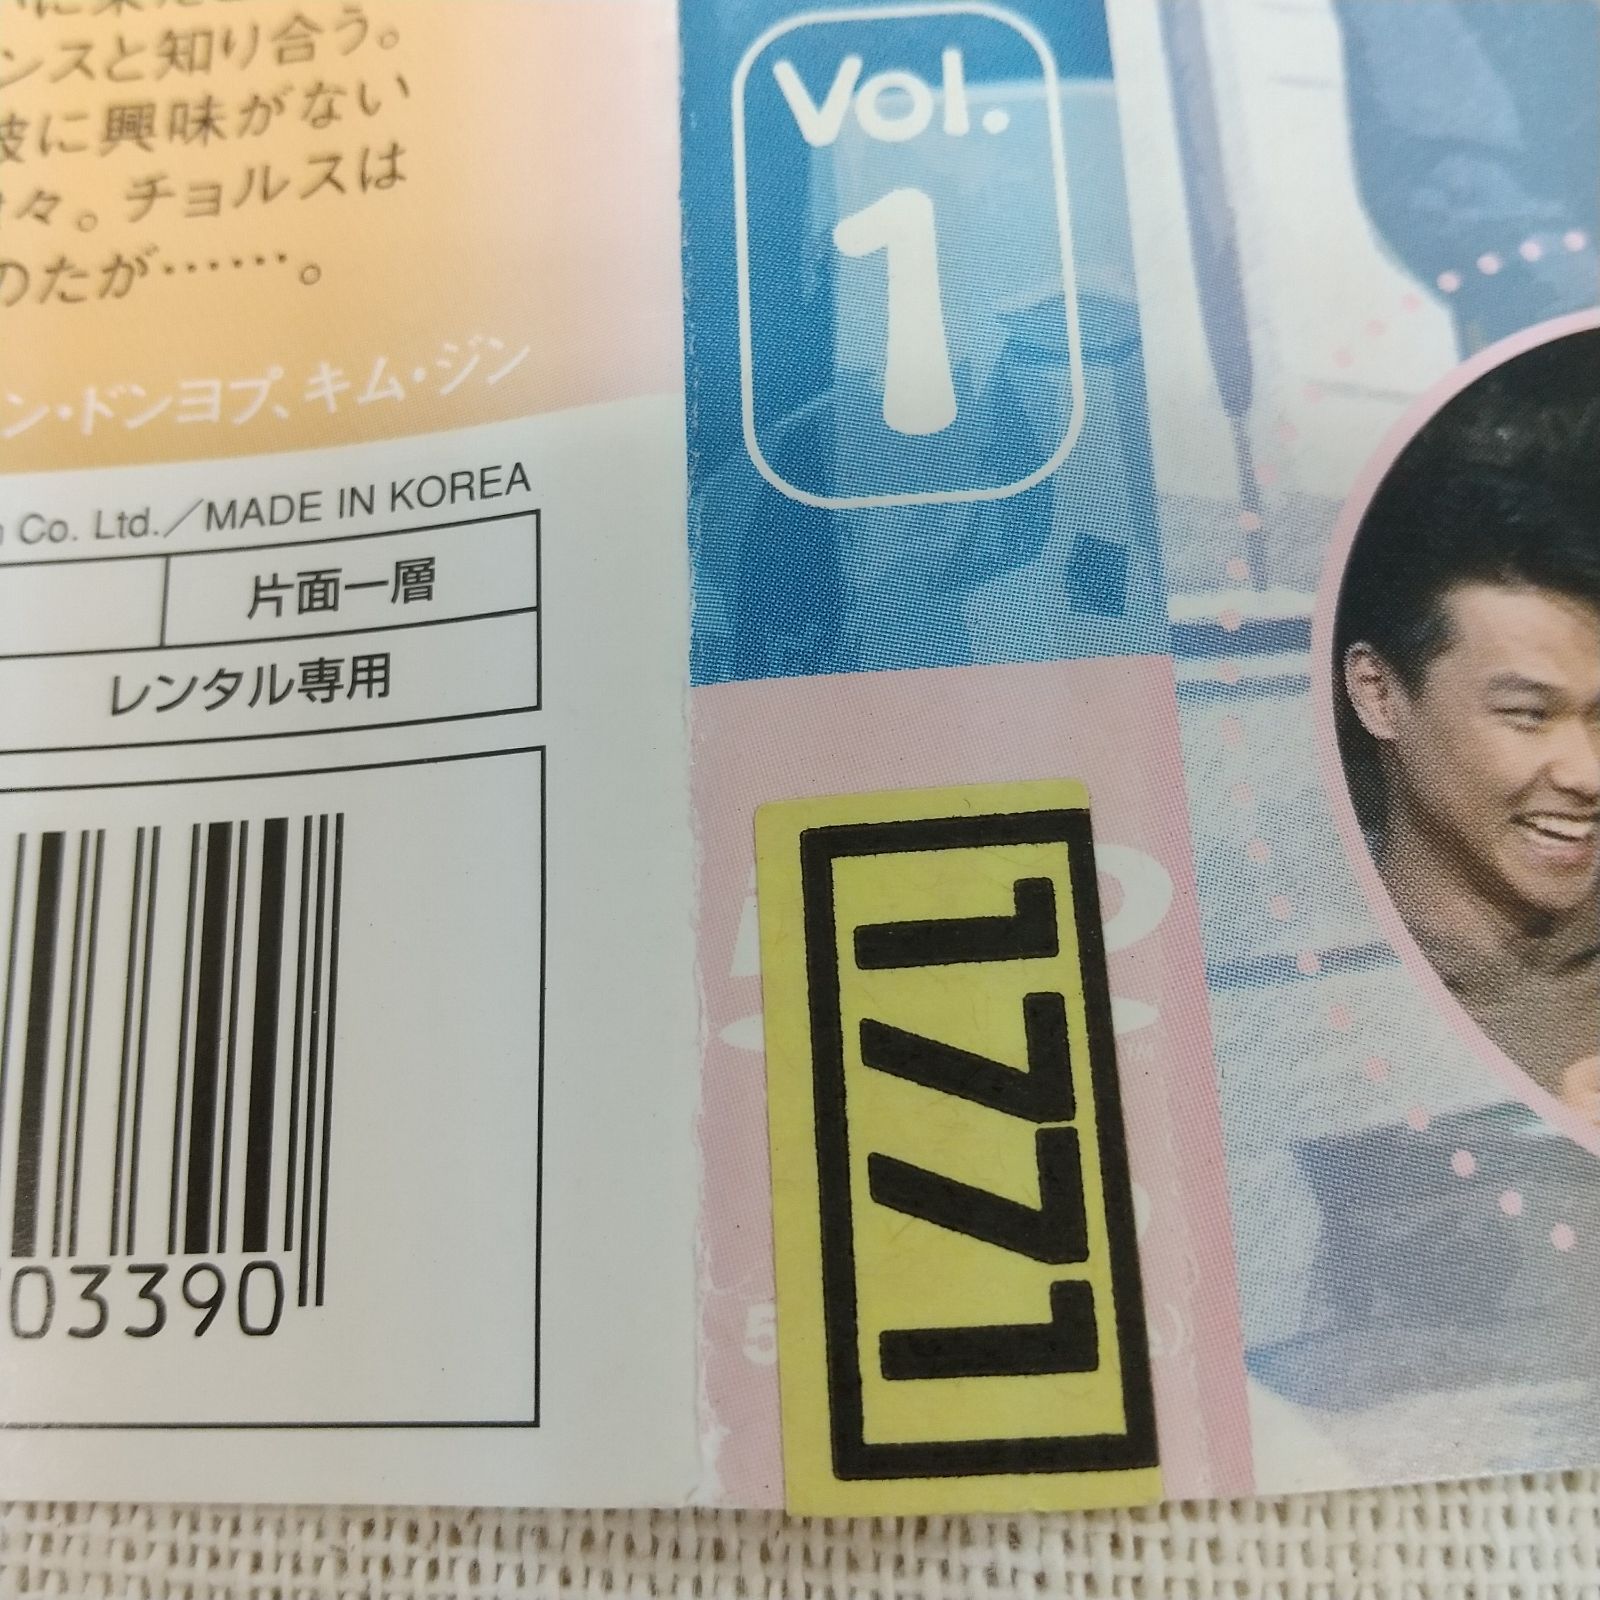 男女6人恋物語 VOL.1 レンタル専用 中古 DVD ケース付き - メルカリ